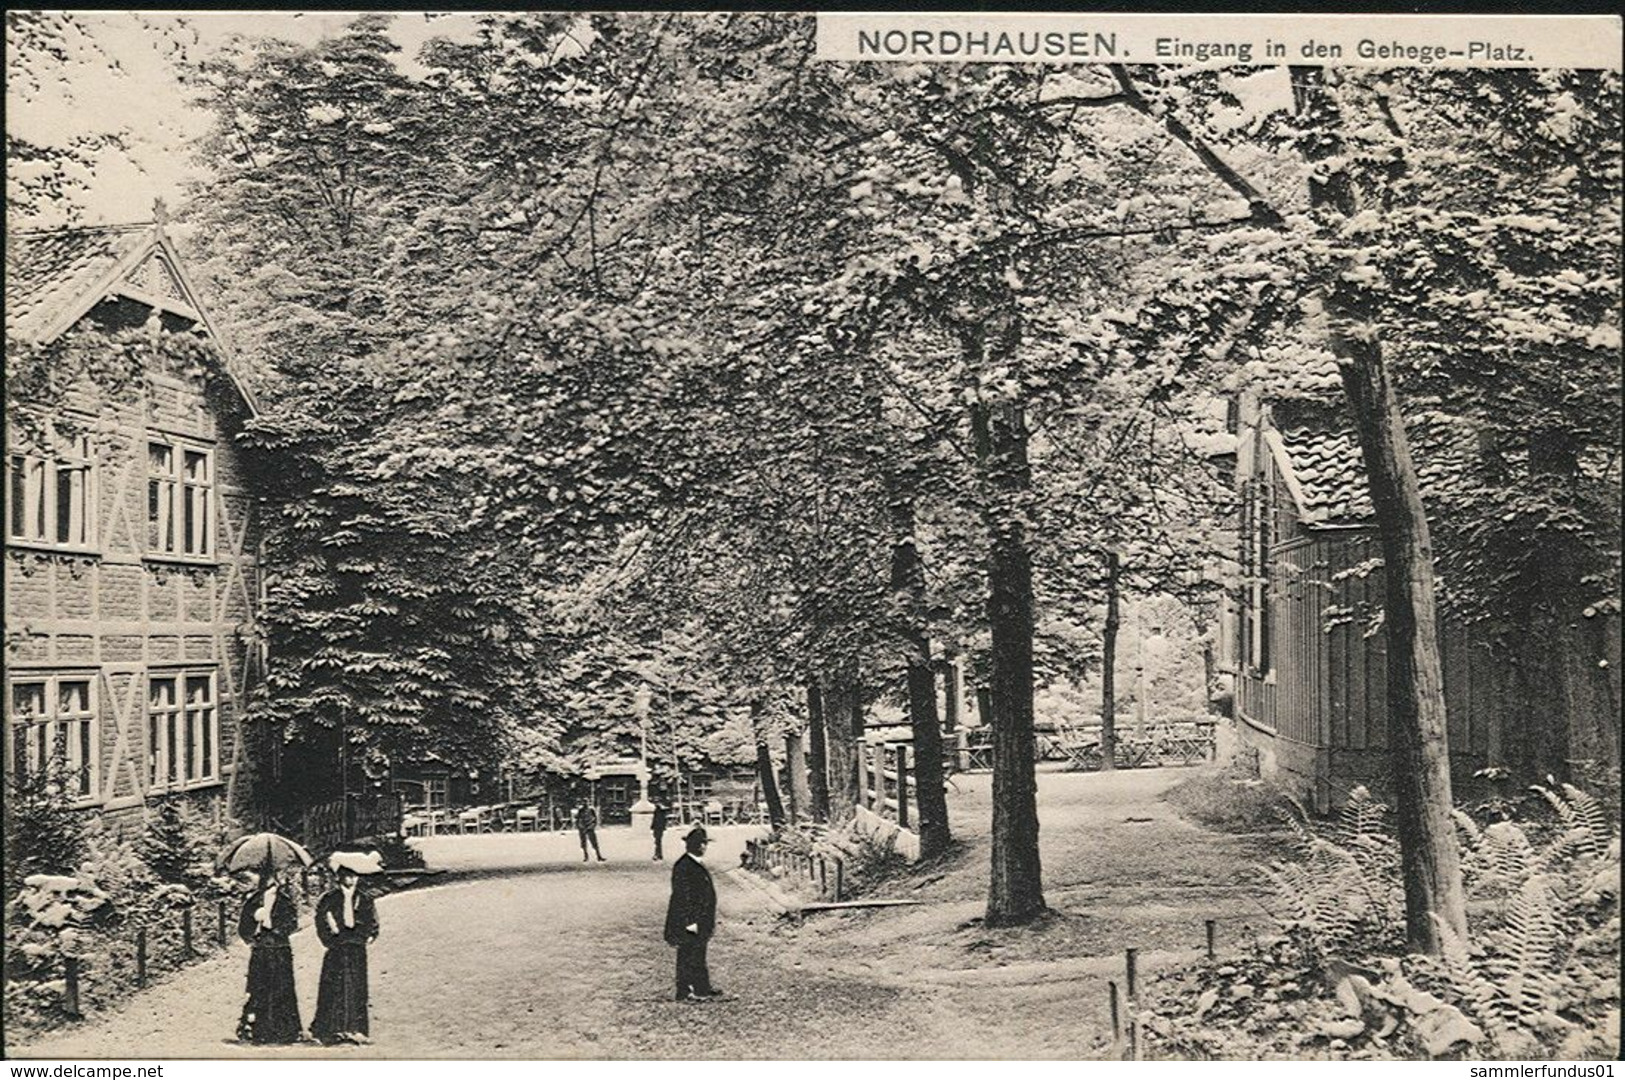 AK/CP Nordhausen  Eingang Gehegeplatz     Gel./circ. 1916 , Karte Etwa 1908     Erh./Cond. 1-   Nr. 01126 - Nordhausen